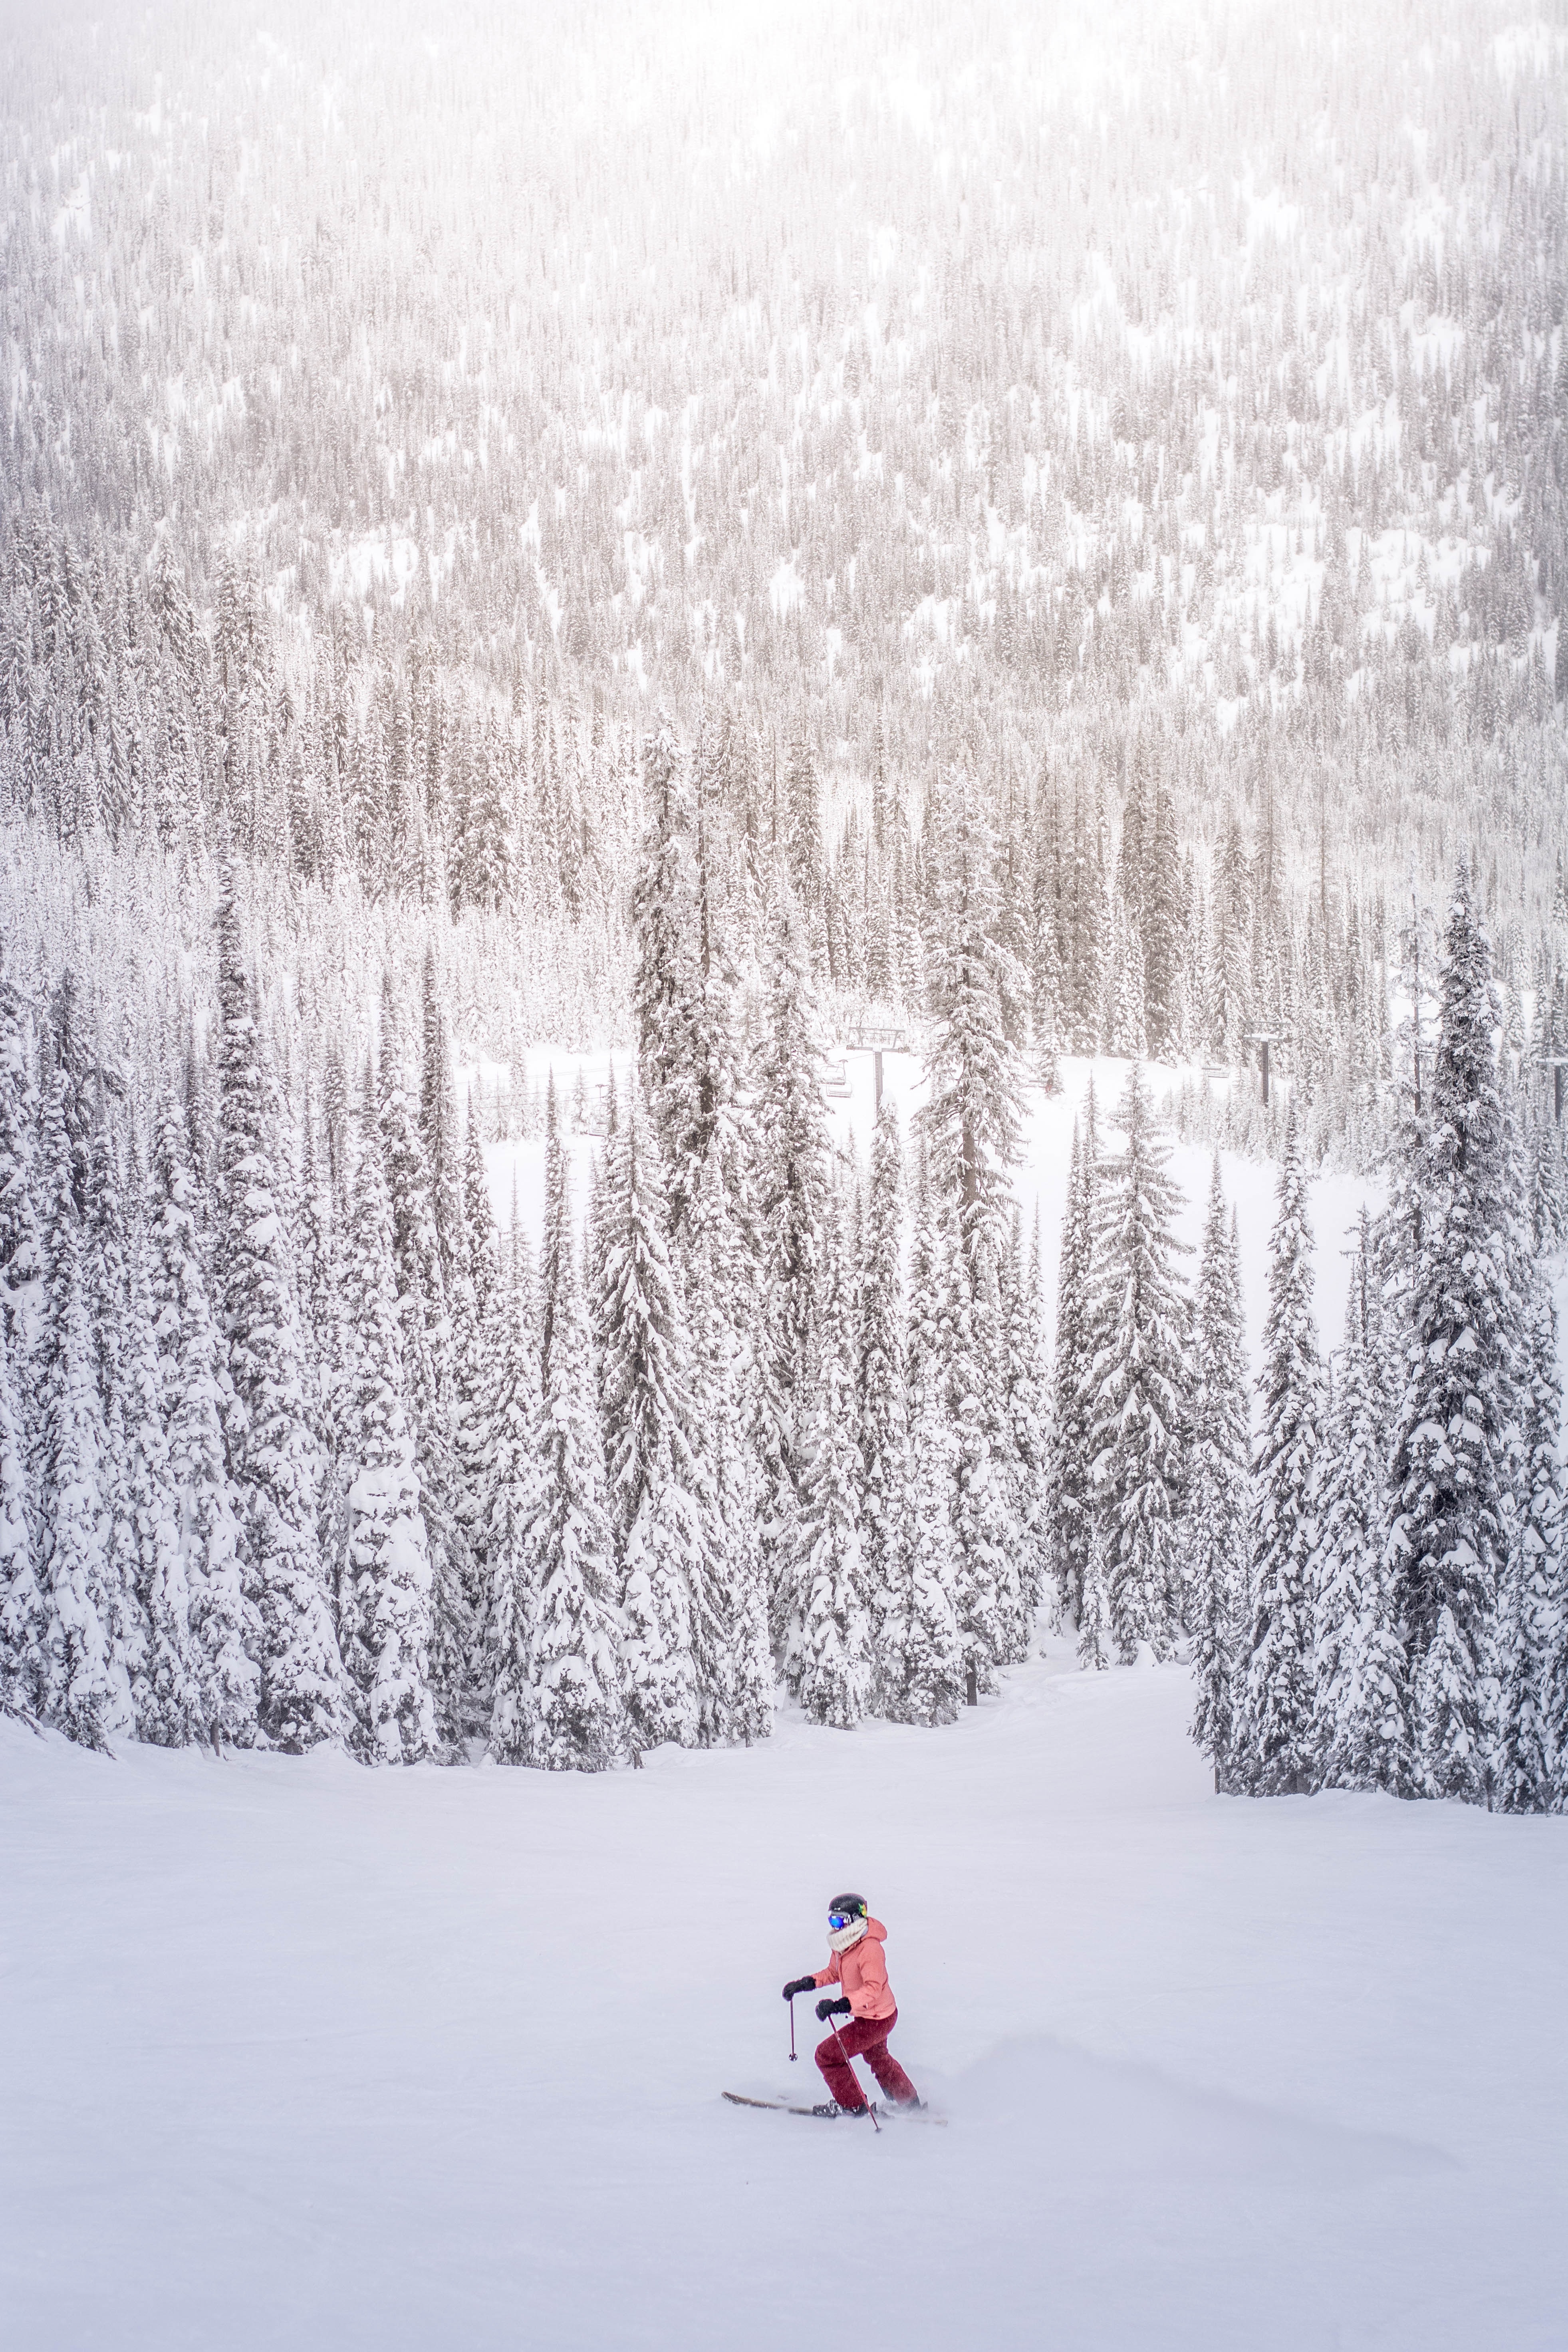 156296 免費下載壁紙 运动, 冬天, 树, 雪, 雪覆盖, 白雪覆盖, 滑雪者 屏保和圖片